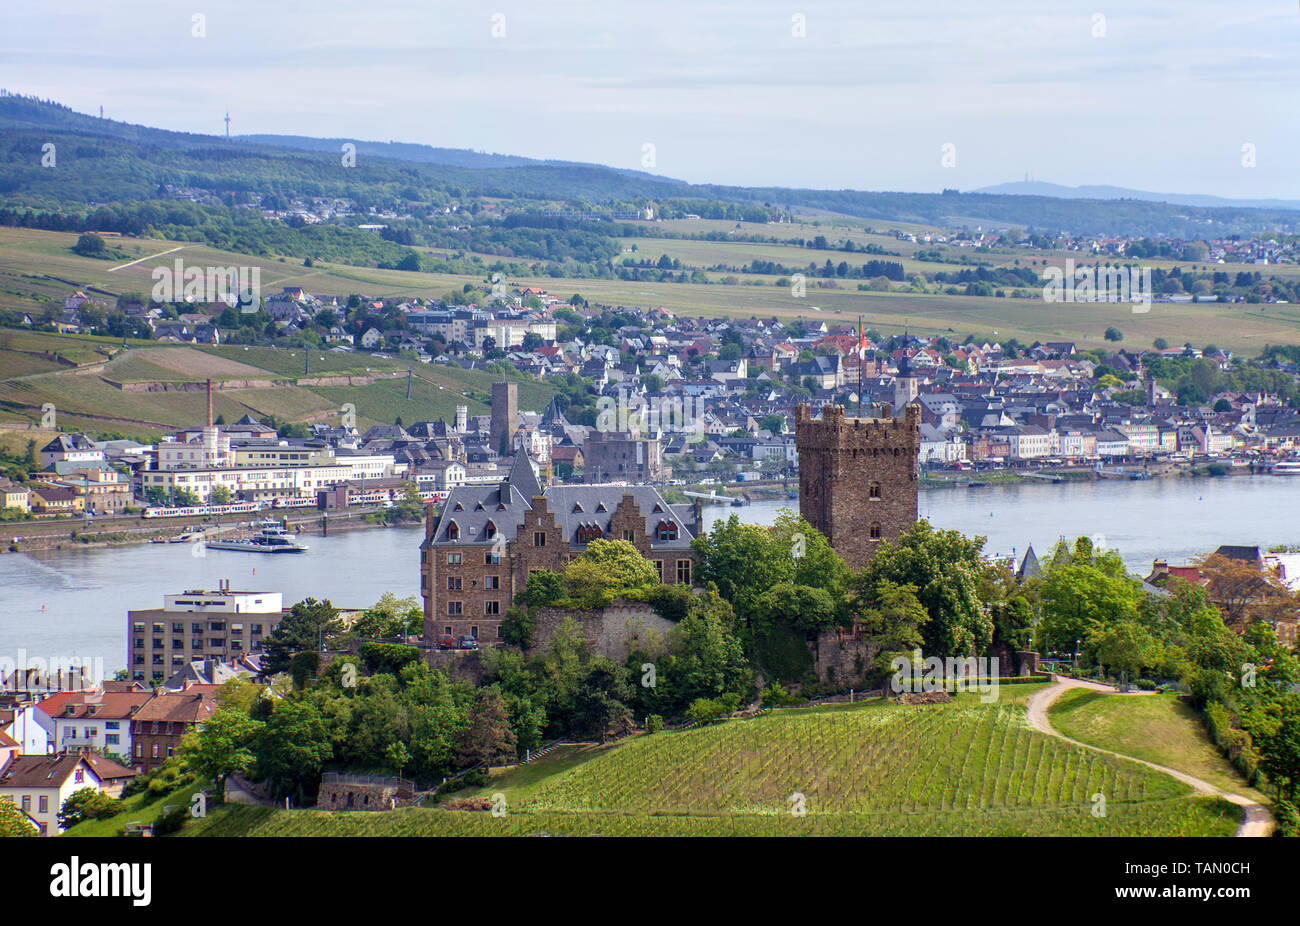 Die Burg Klopp in Bingen, Blick auf Rüdesheim auf der anderen Seite des Rheins, Oberes Mittelrheintal, Rheinland-Pfalz, Deutschland Stockfoto